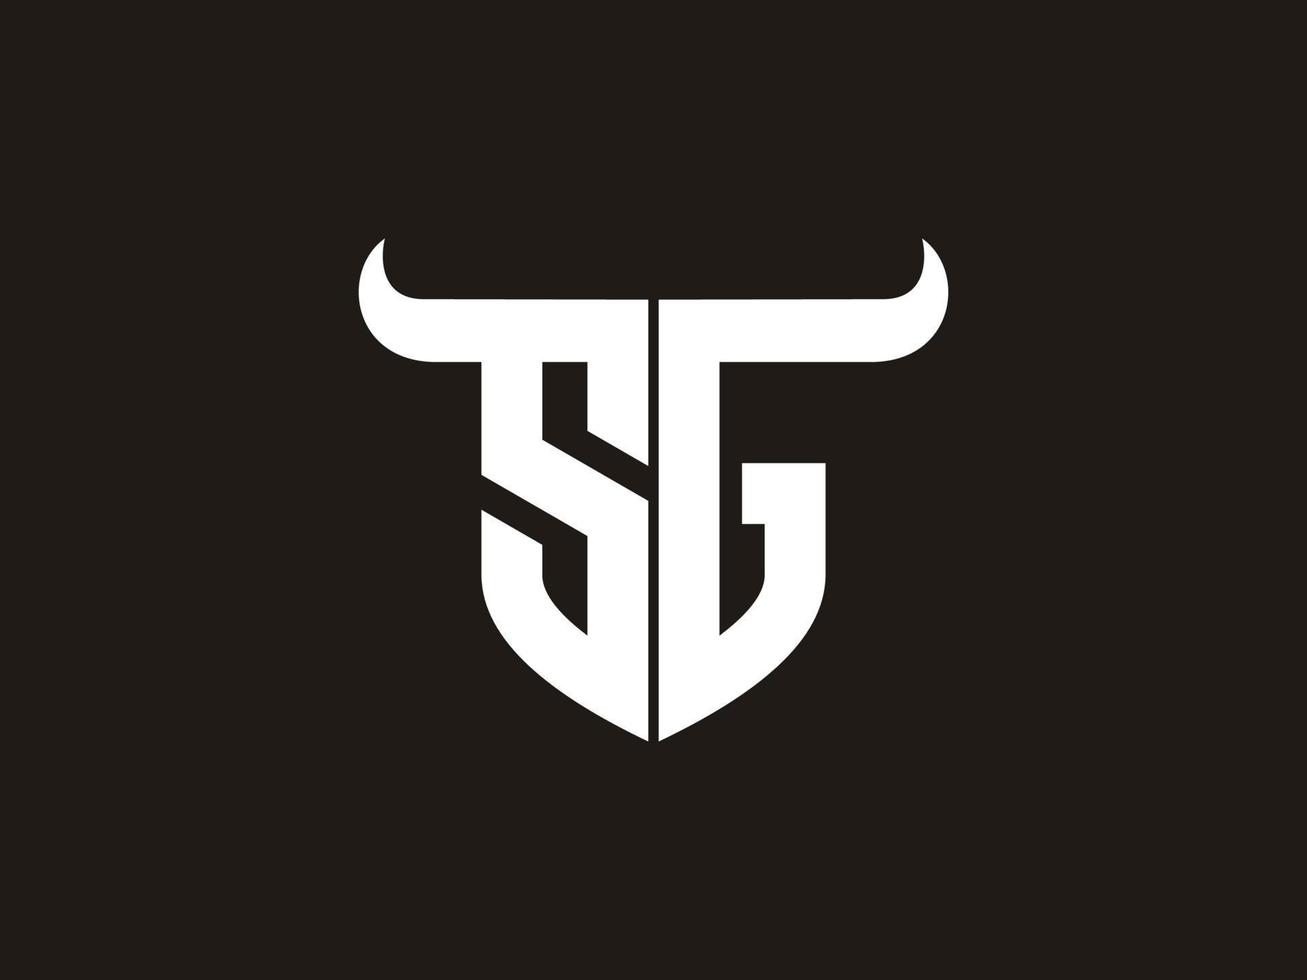 diseño inicial del logo del toro sg. vector